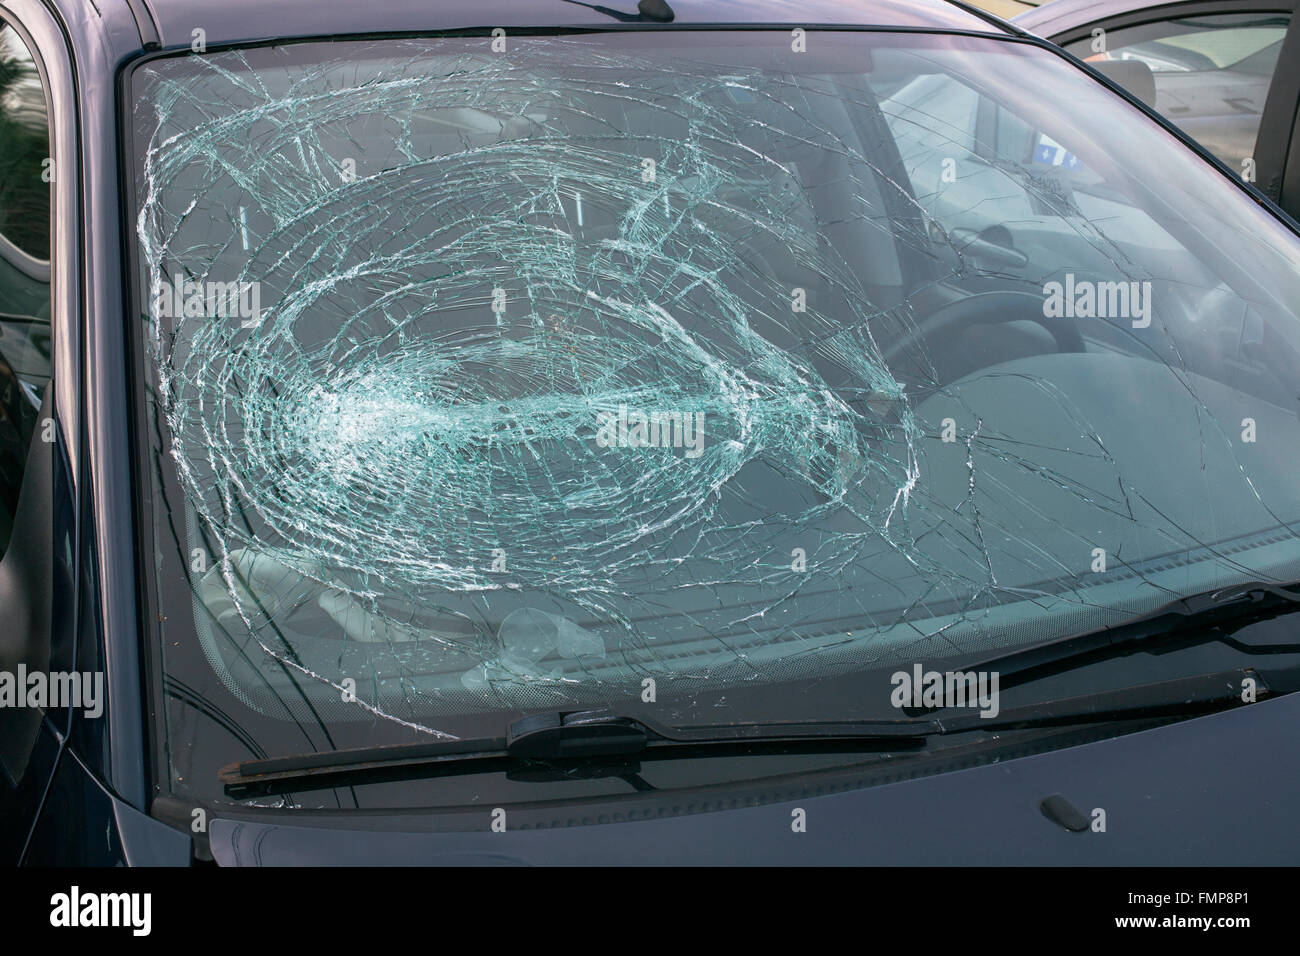 Auto mit gebrochener Windschutzscheibe - ein lizenzfreies Stock Foto von  Photocase